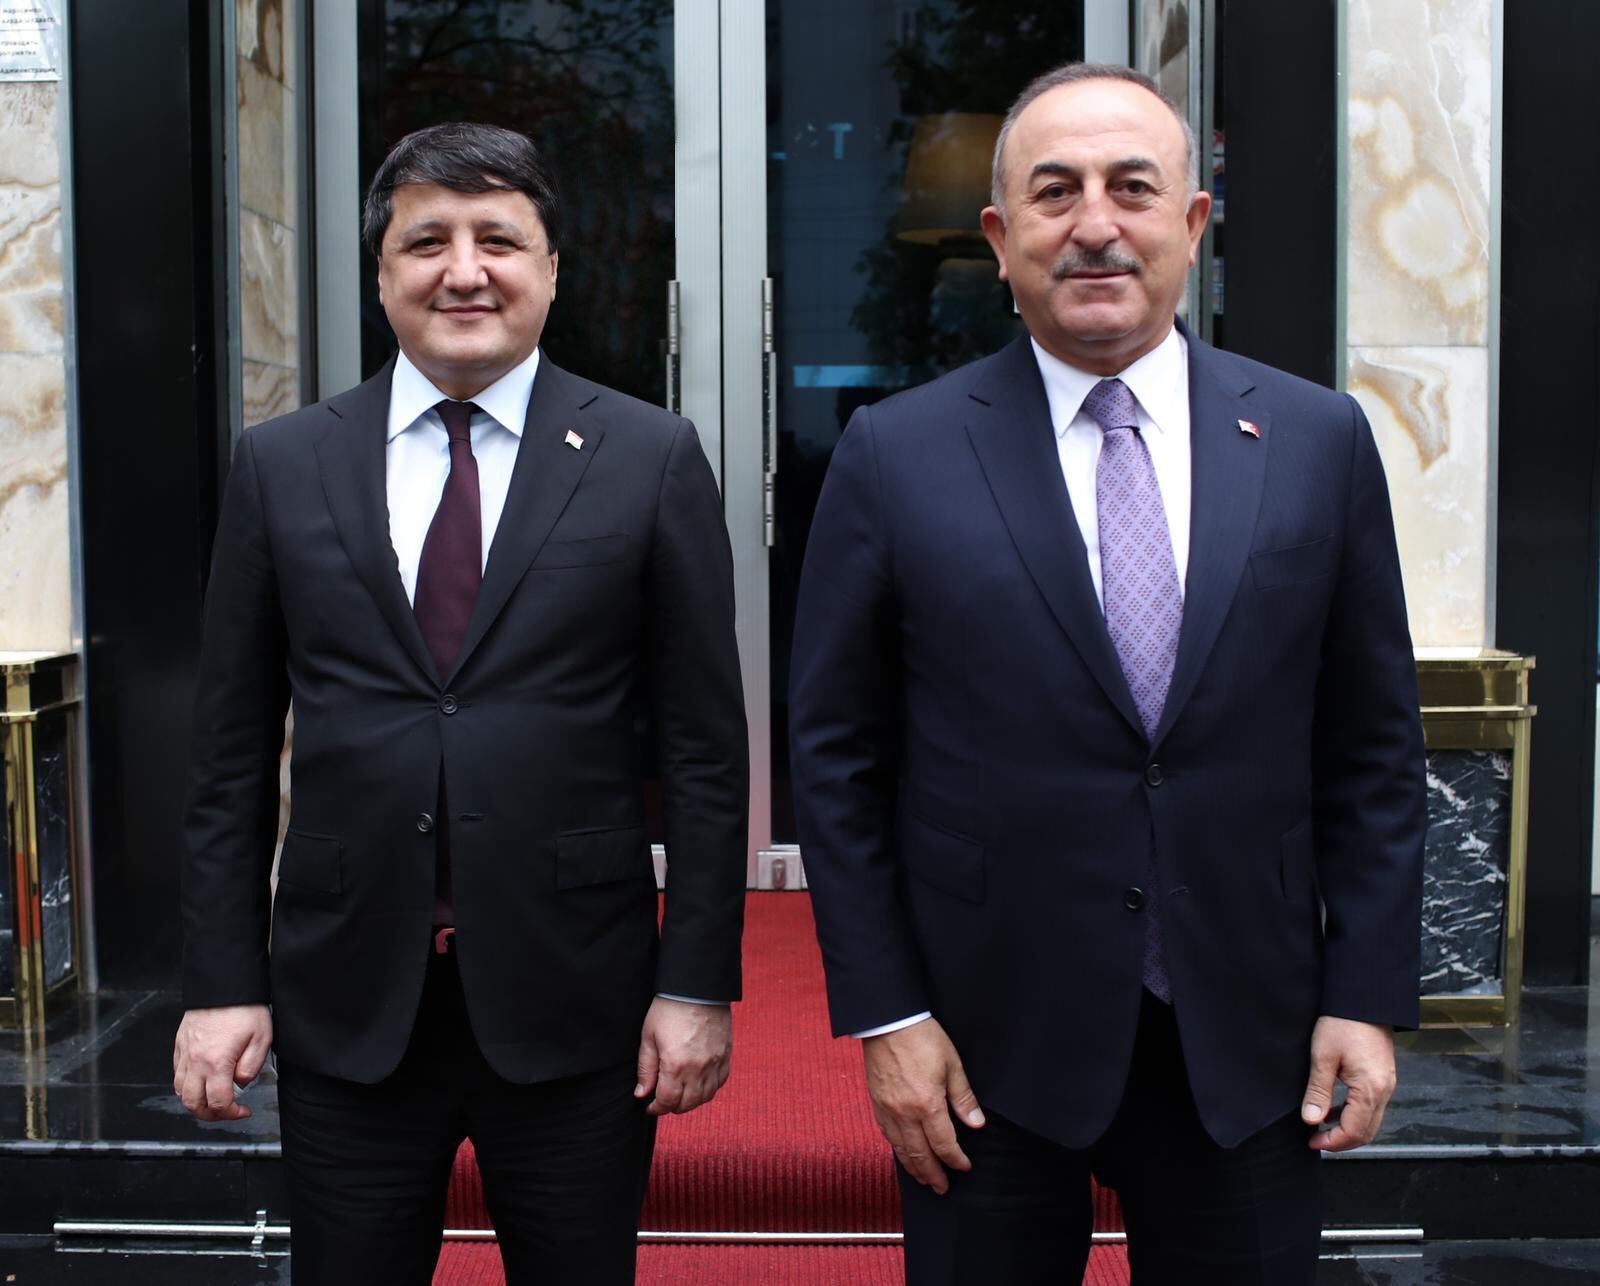 Çavuşoğlu, Tacikistanlı mevkidaşı Muhriddin ile görüştü